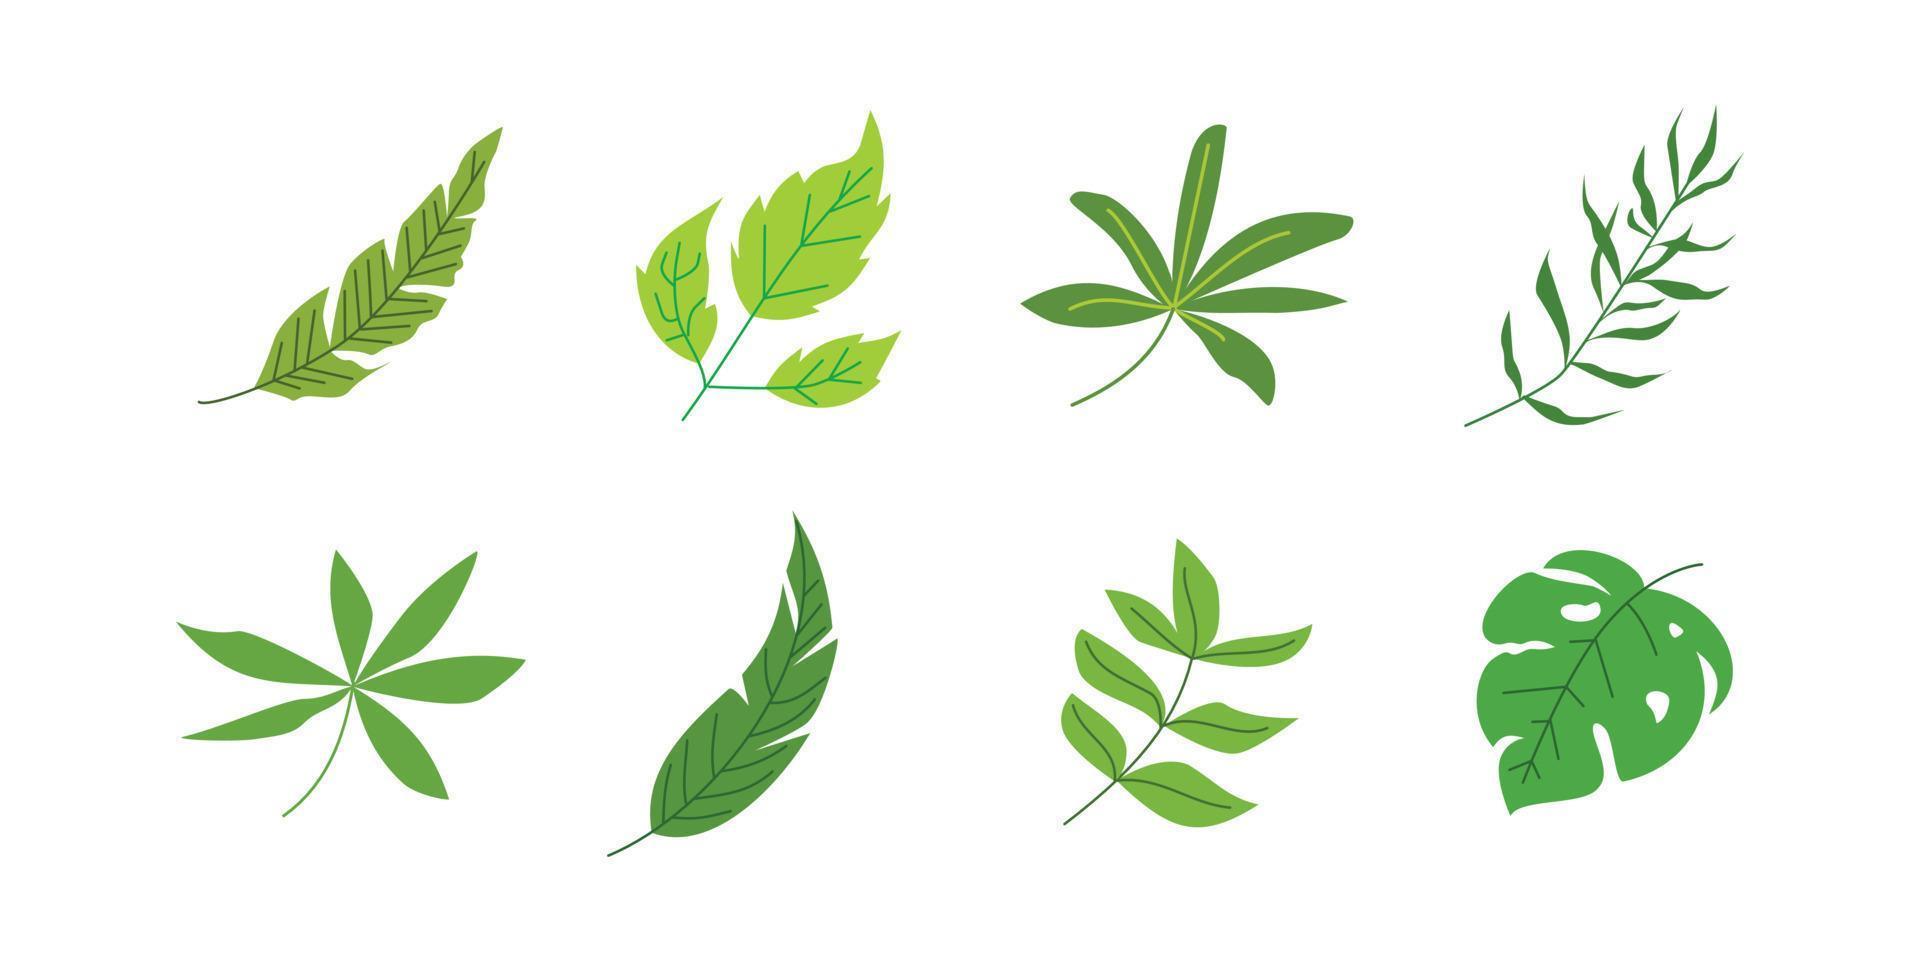 tropical leaf illustration for nature design element vector